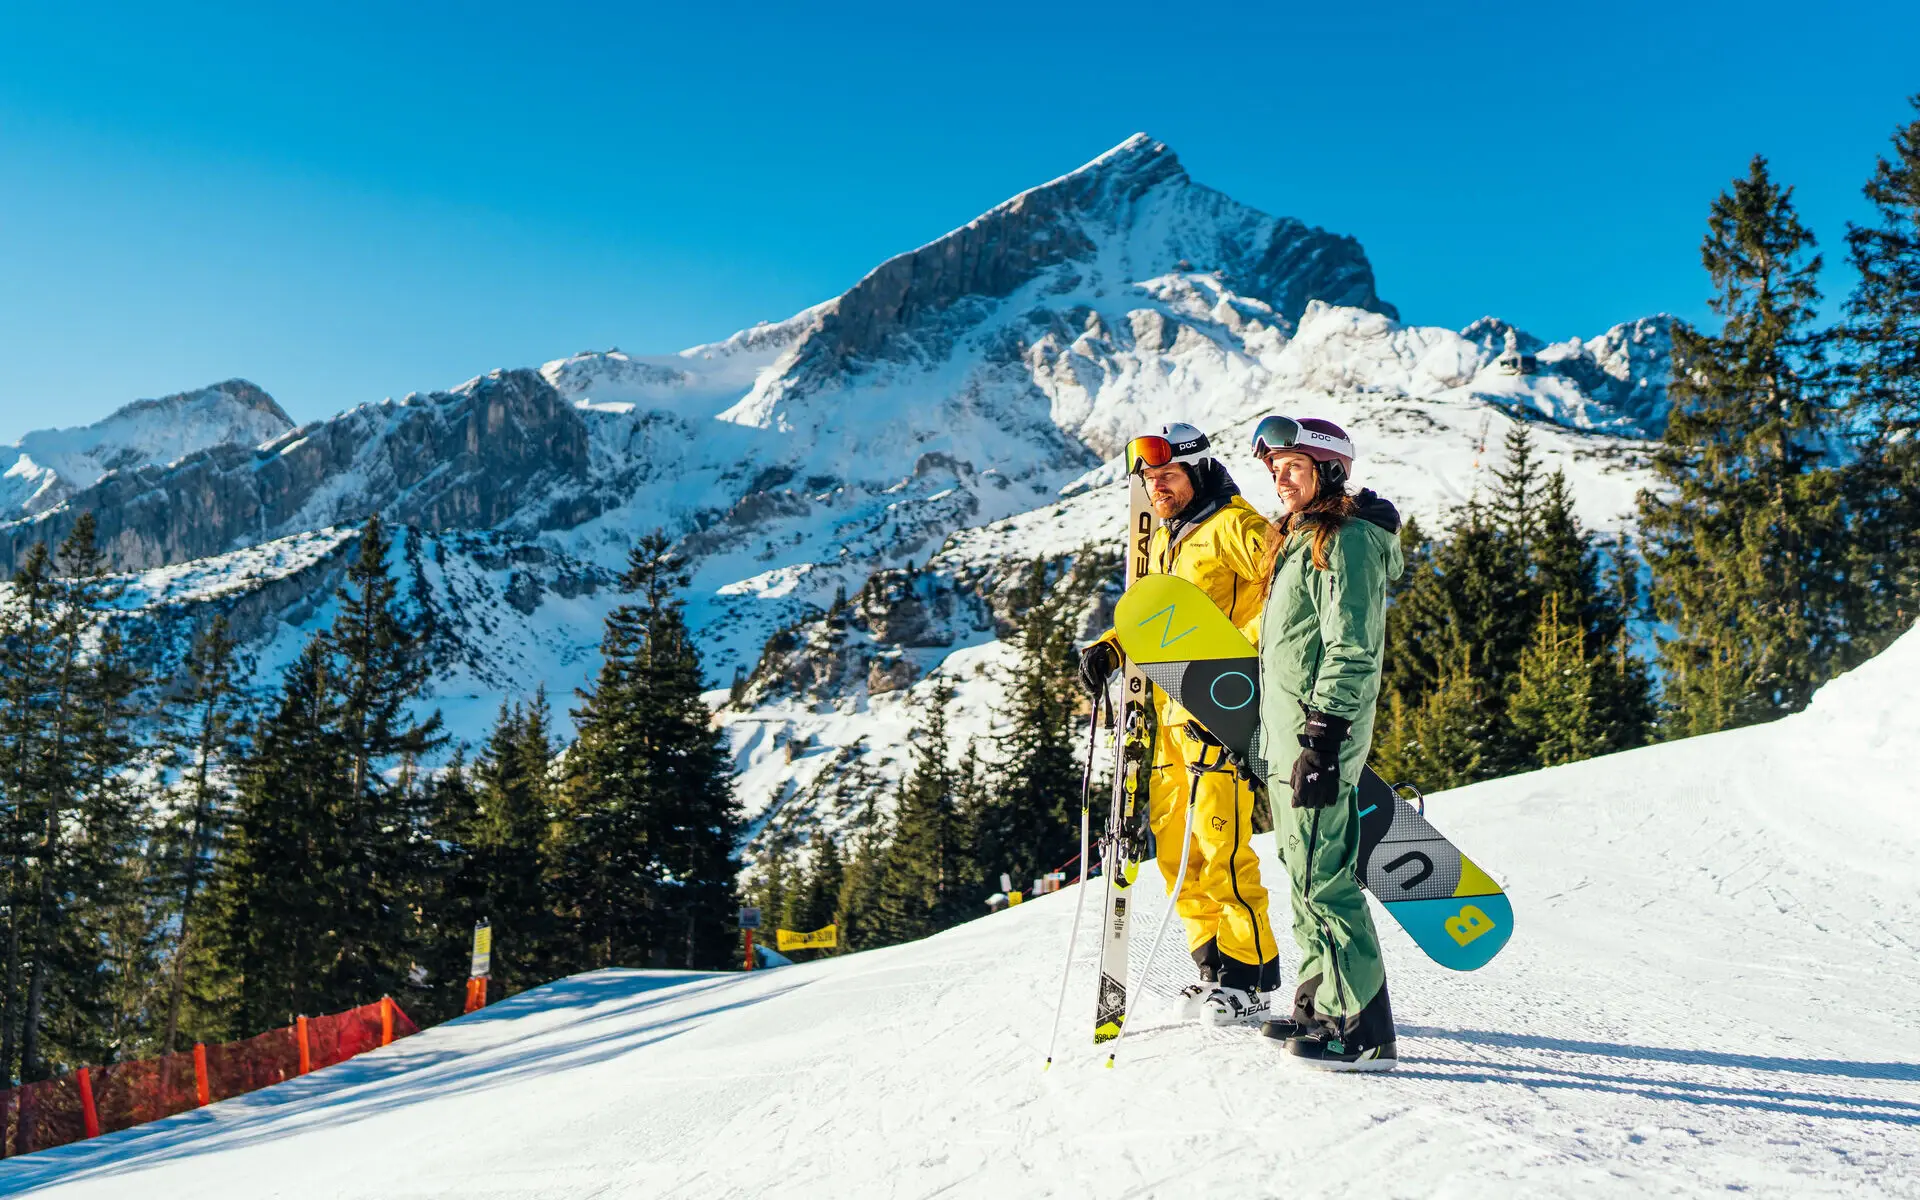 Zwei Personen stehen mit Skiausrüstung auf einem Berg mit Schnee, im Hintergrund ist eine schneebedeckte Berglandschaft